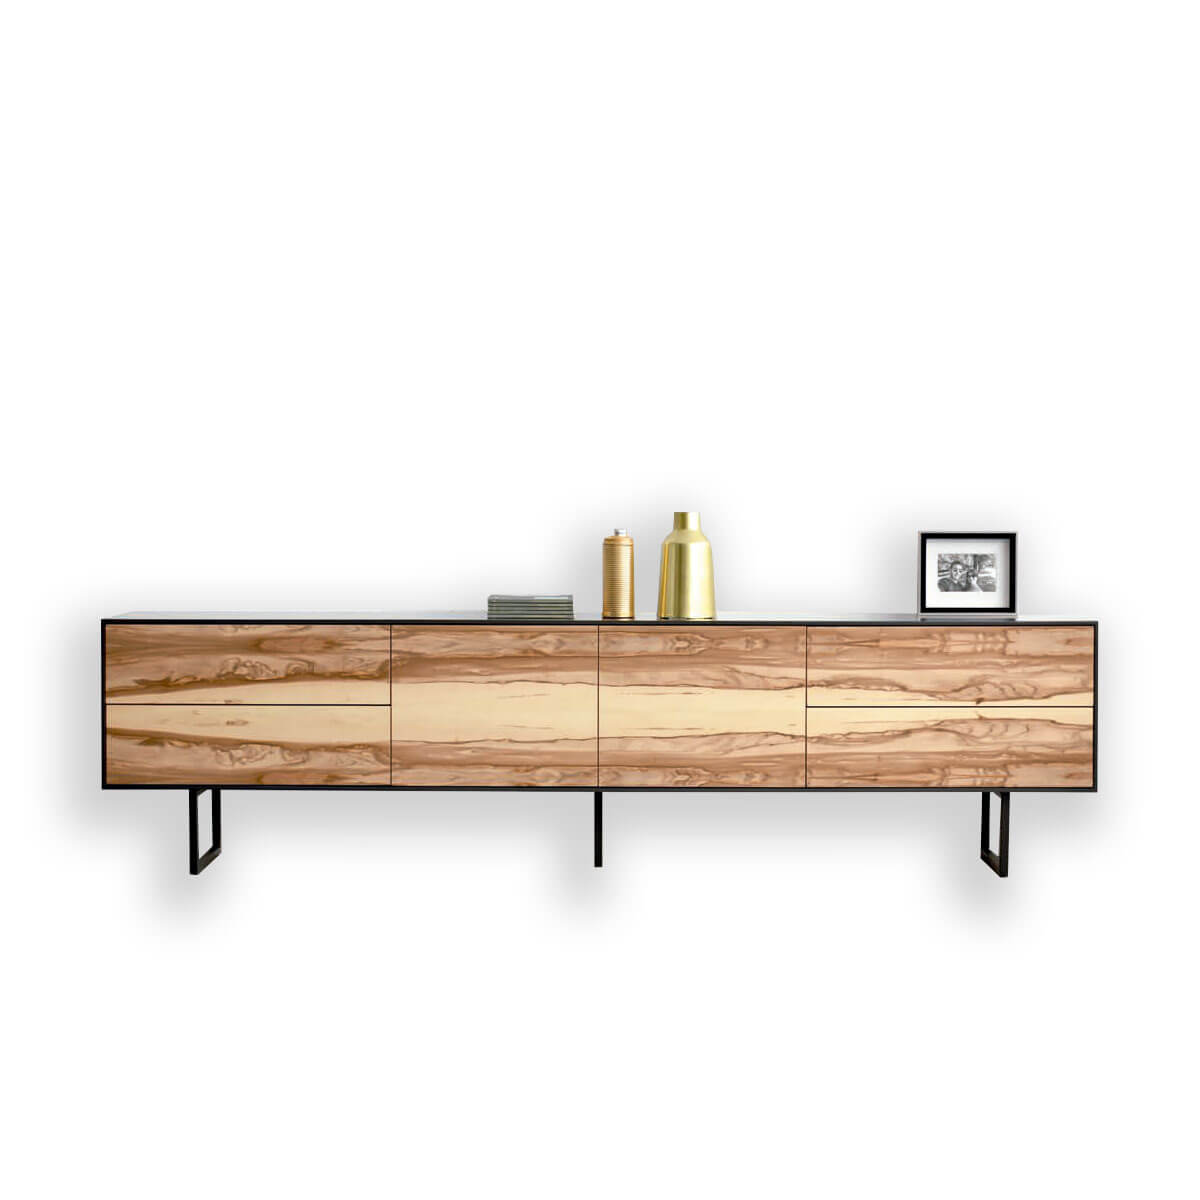 Mueble TV madera natural - Naturshome